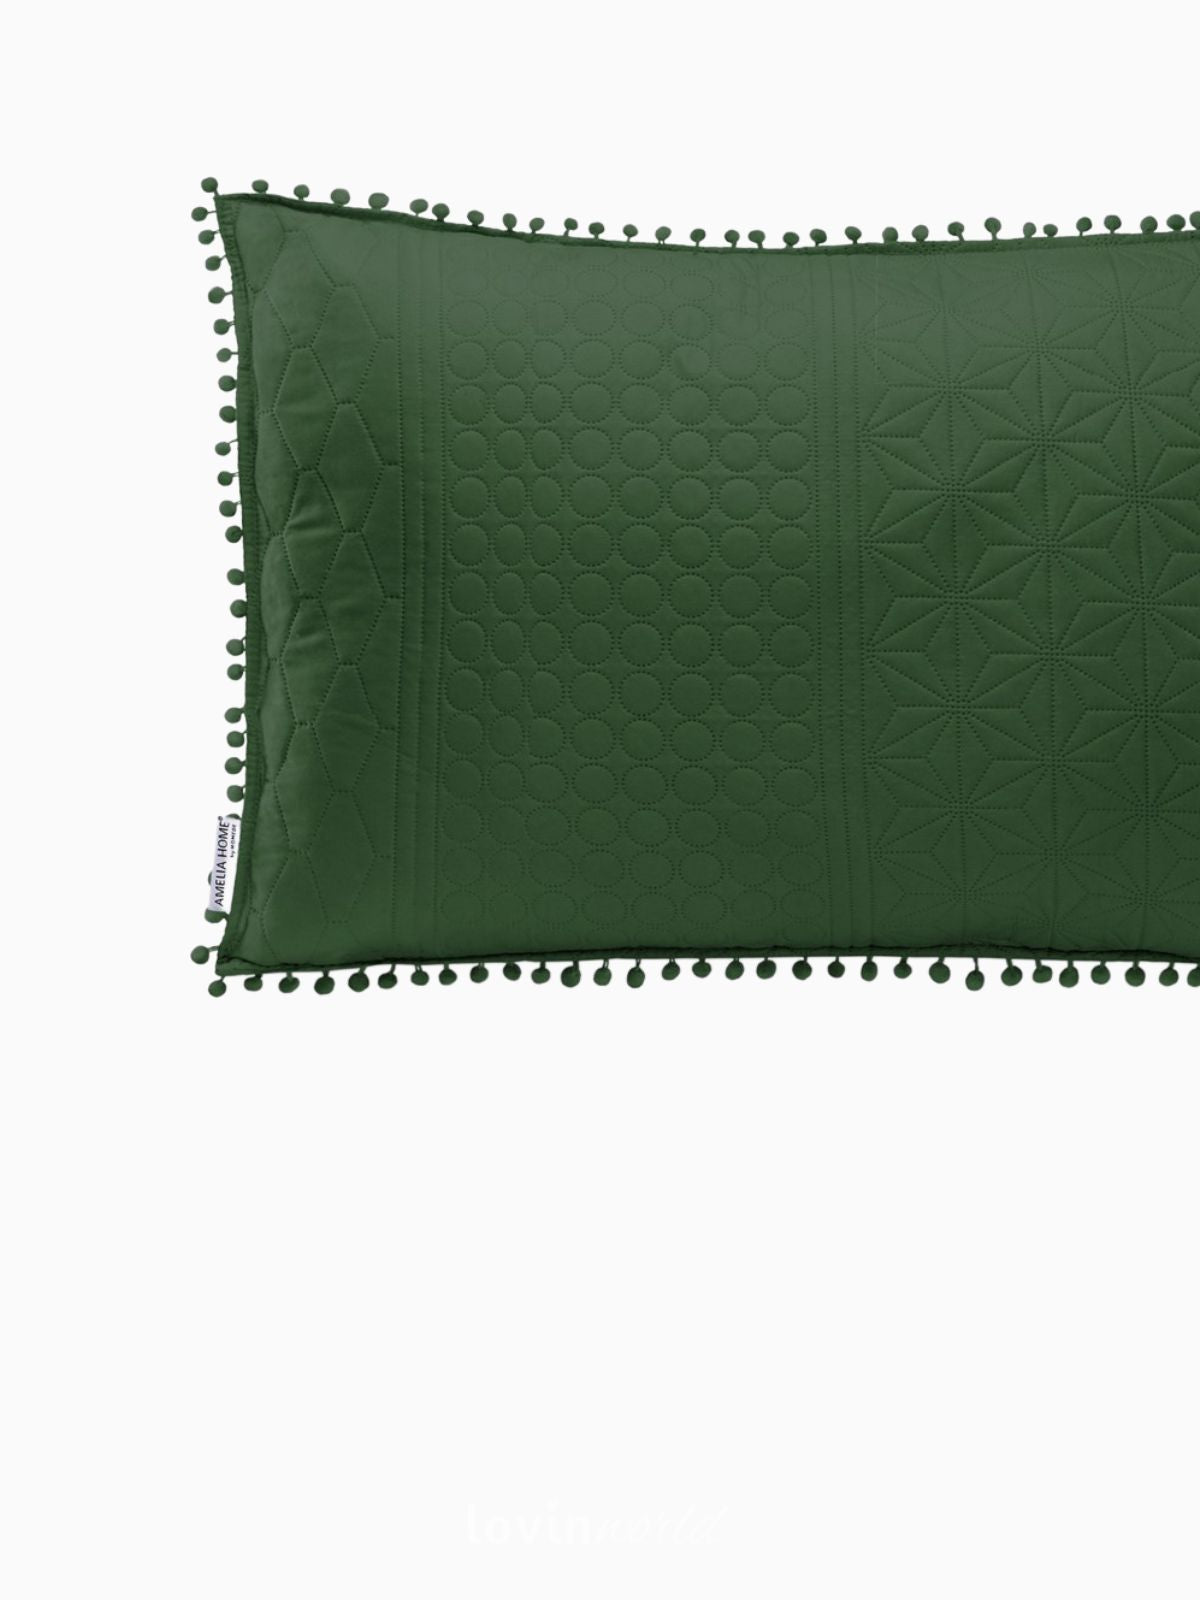 Cuscino decorativo Meadore in colore verde 50x70 cm.-3